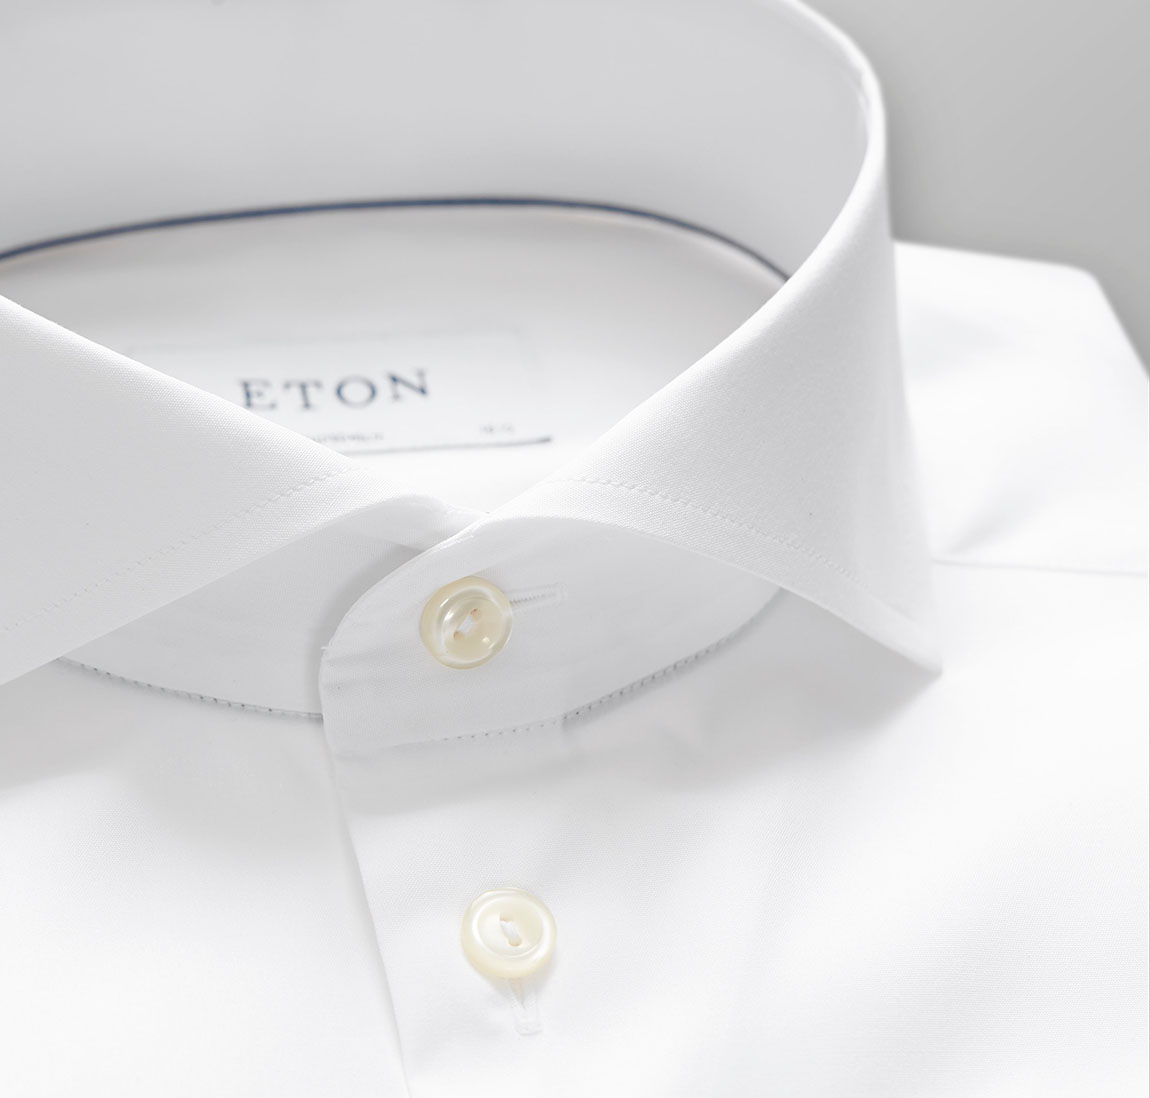 Eton Shirts: Pushing the boundaries of shirt-making